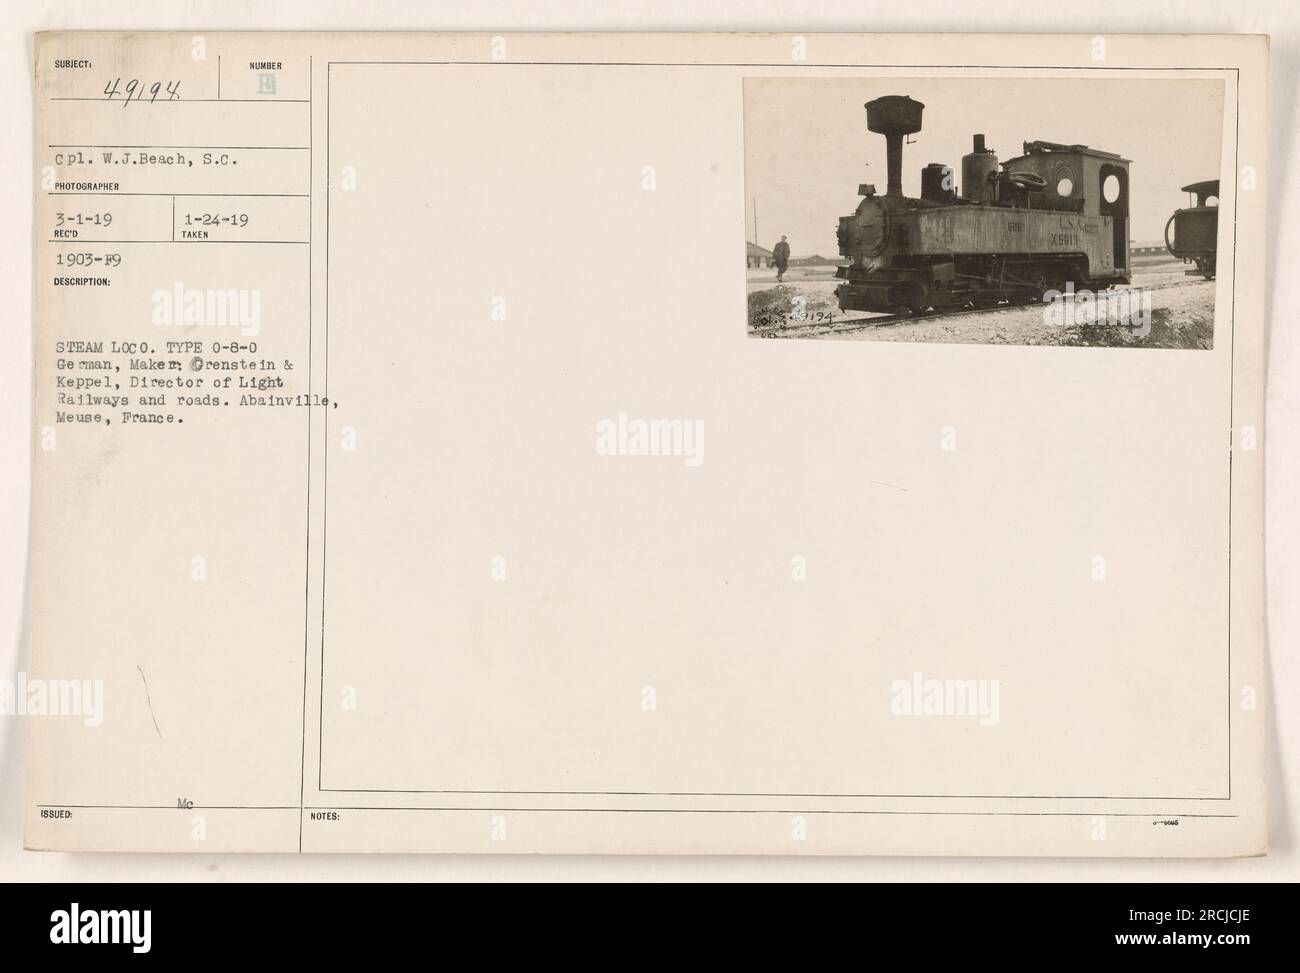 Dampflokomotive deutscher Herkunft, insbesondere eine Typ 0-8-0, hergestellt von Orenstein & Keppel. Es wurde vom Direktor für leichte Eisenbahnen und Straßen in Abainville, Mause, Frankreich während des Ersten Weltkriegs betrieben. Dieses Foto wurde am 3. Januar 1919 aufgenommen und am 19. Januar 1903 erhalten. Sie hat die Nummer 1-24-19. Stockfoto